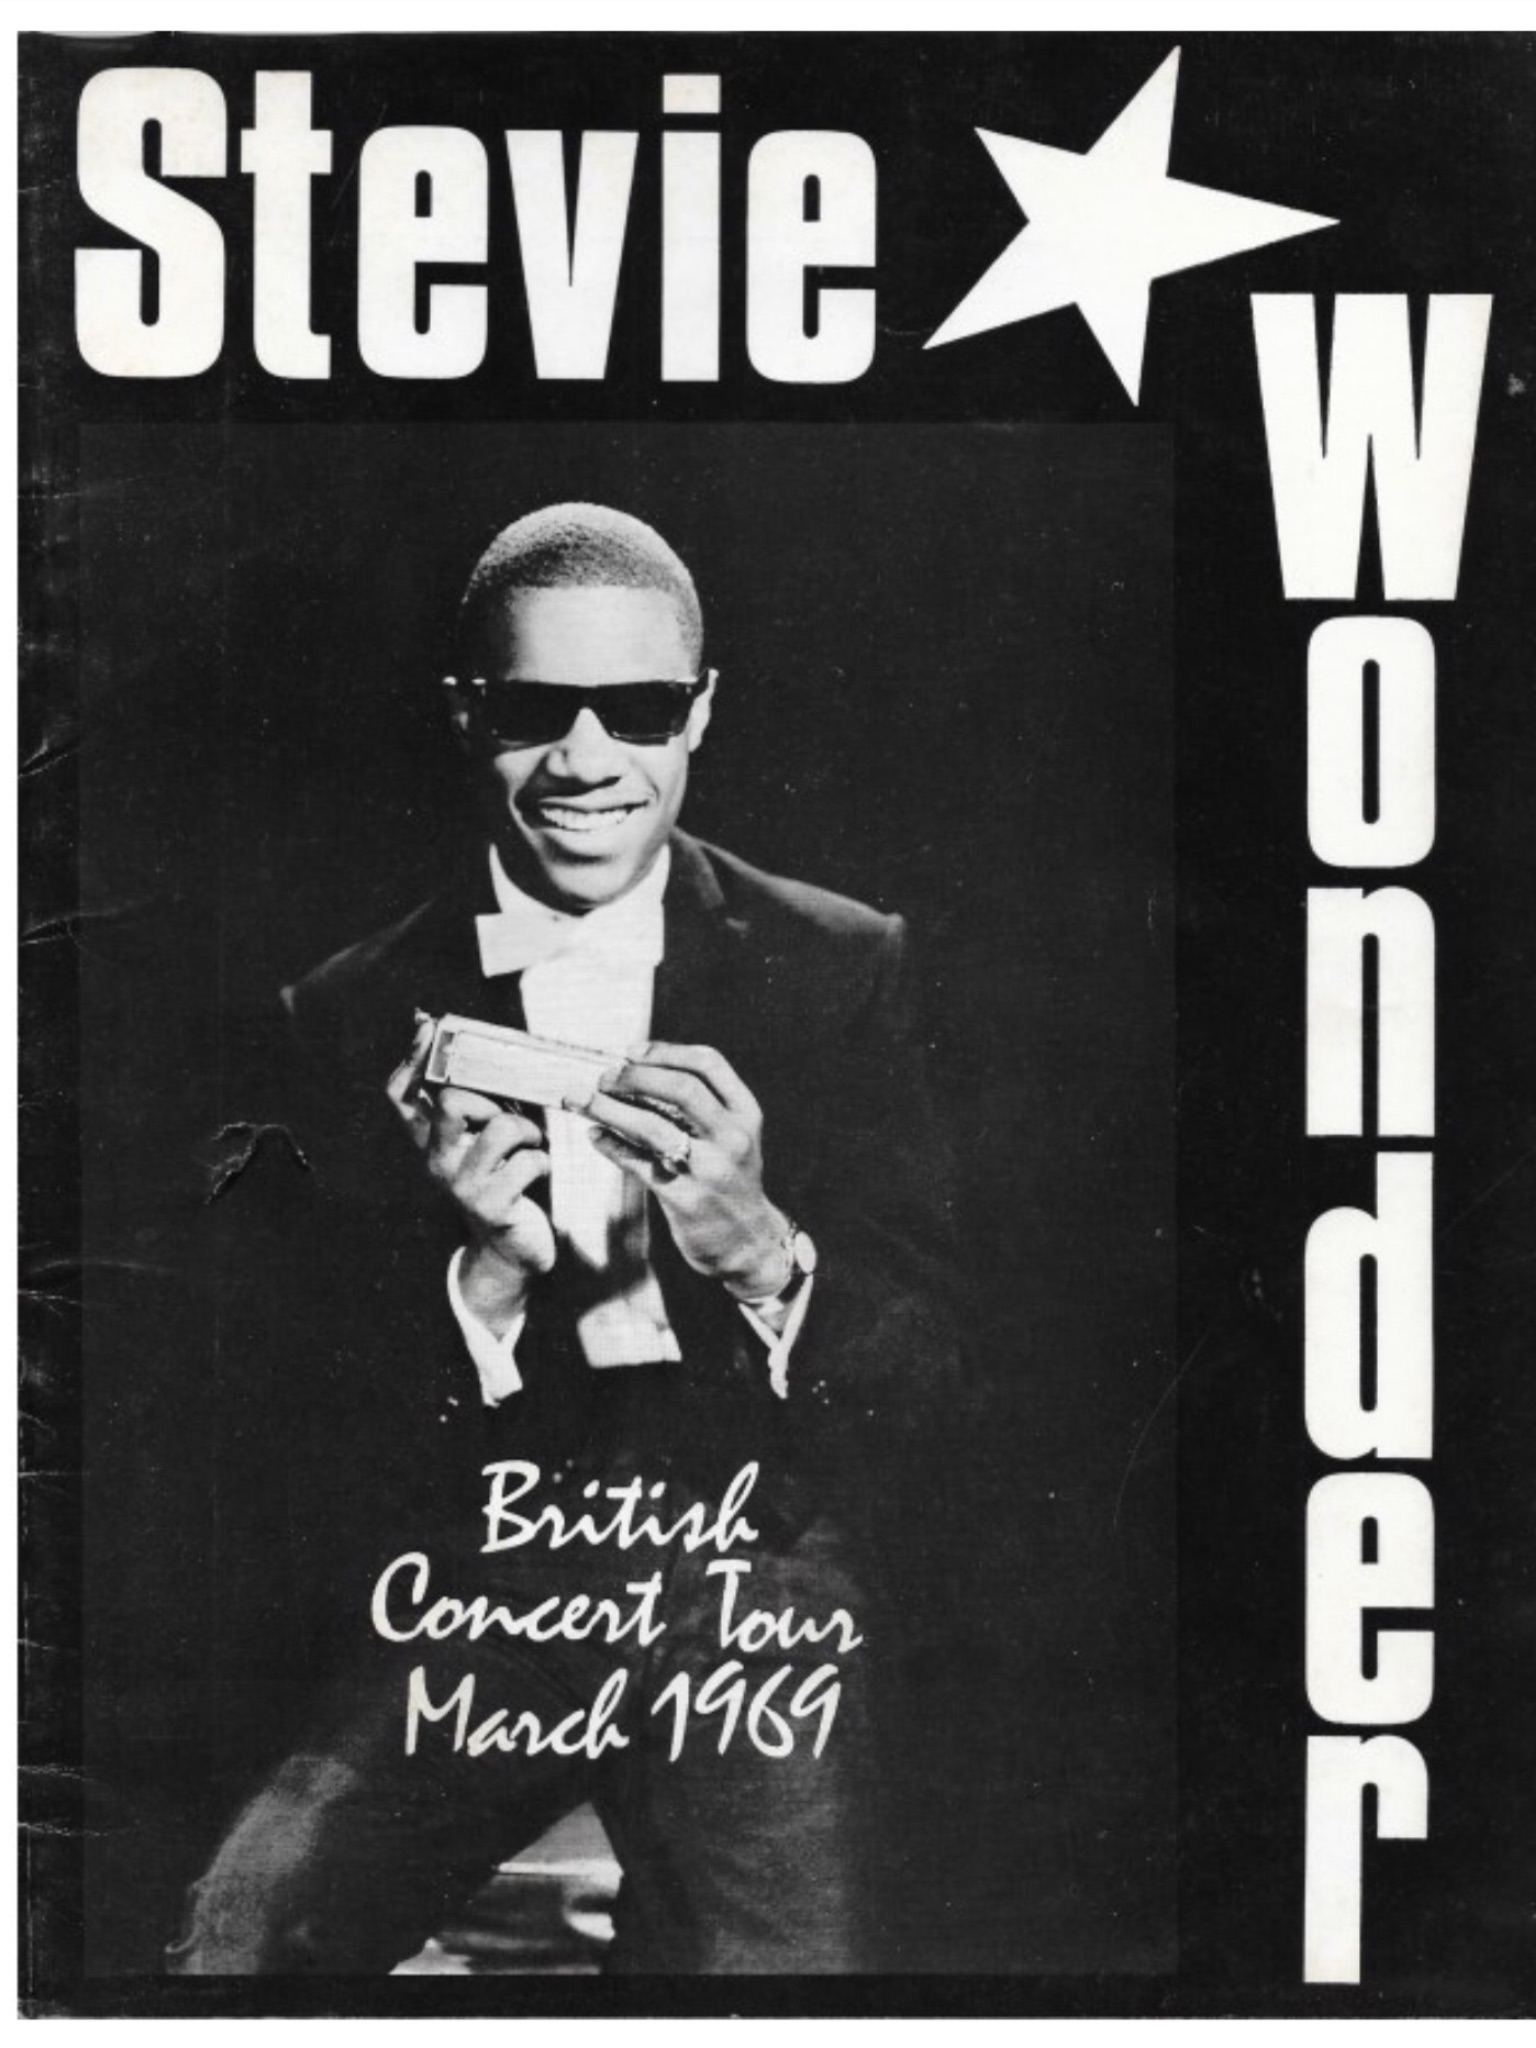 when did stevie wonder tour uk